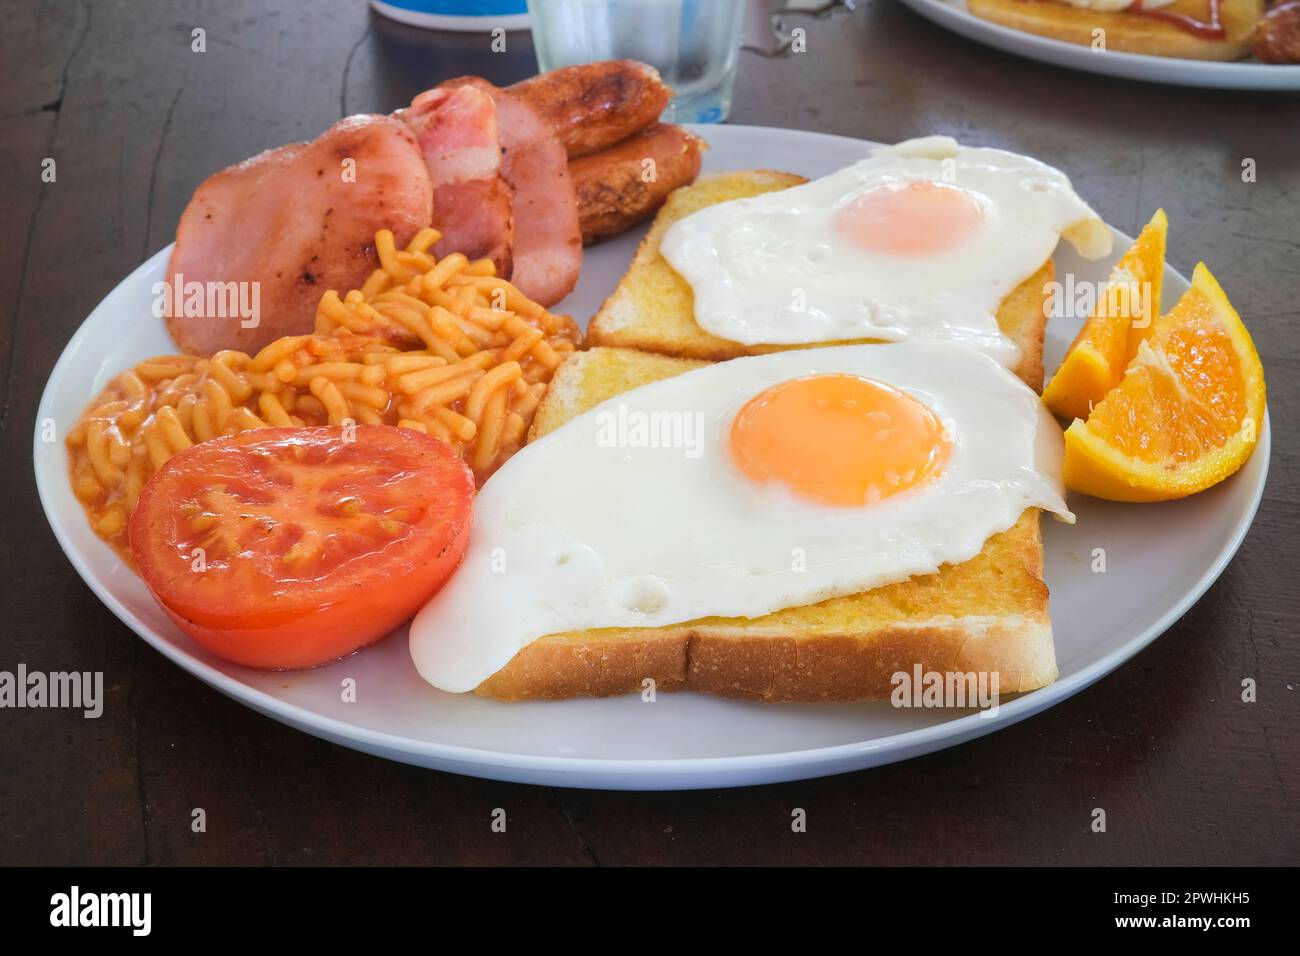 Petit-déjeuner australien avec œufs sur pain grillé, bacon, saucisses, spaghetti, tomates et tranches d'orange Banque D'Images